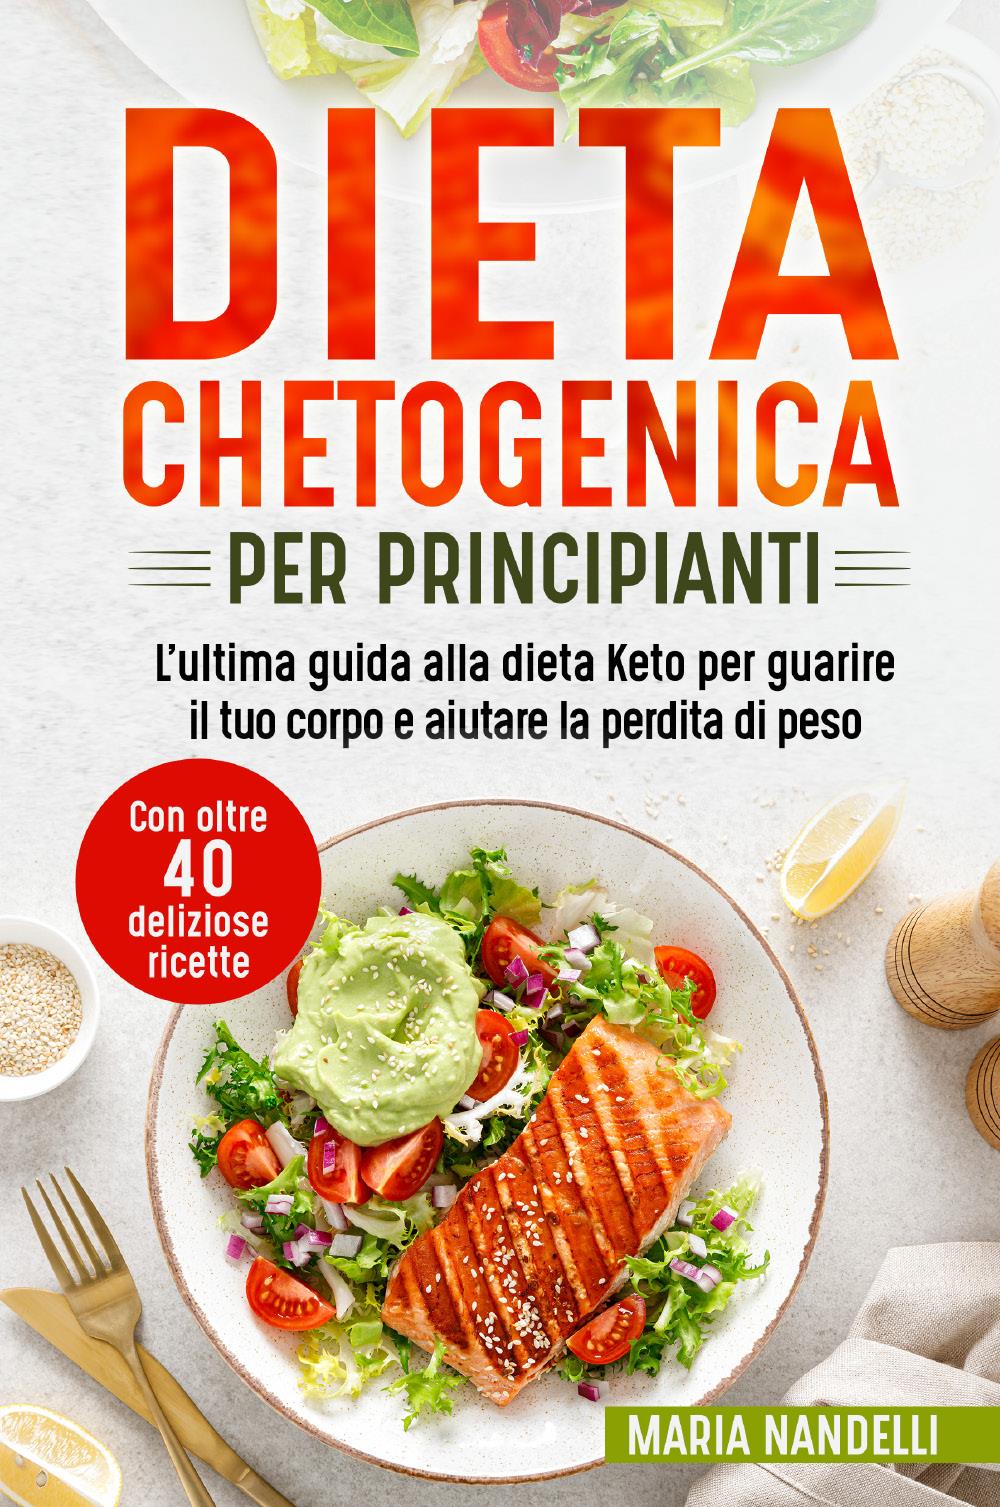 Dieta chetogenica per principianti. L'ultima guida alla dieta Keto per guarire il tuo corpo e aiutare la perdita di peso (Con oltre 40 deliziose ricette)